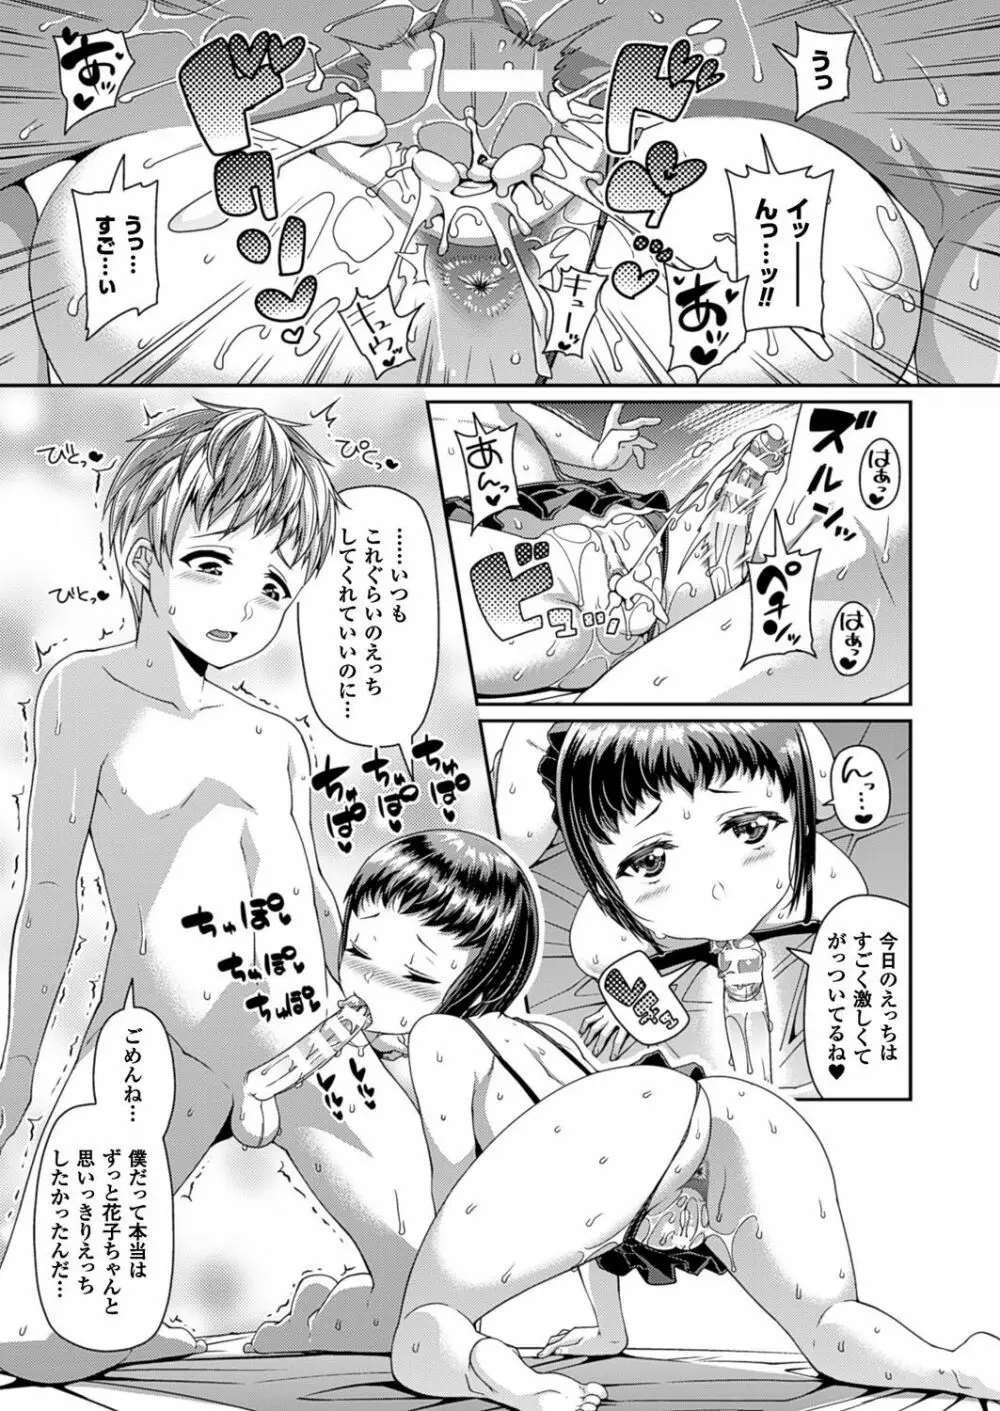 Toshi Densetsu Series Ch. 01-03 Page.62